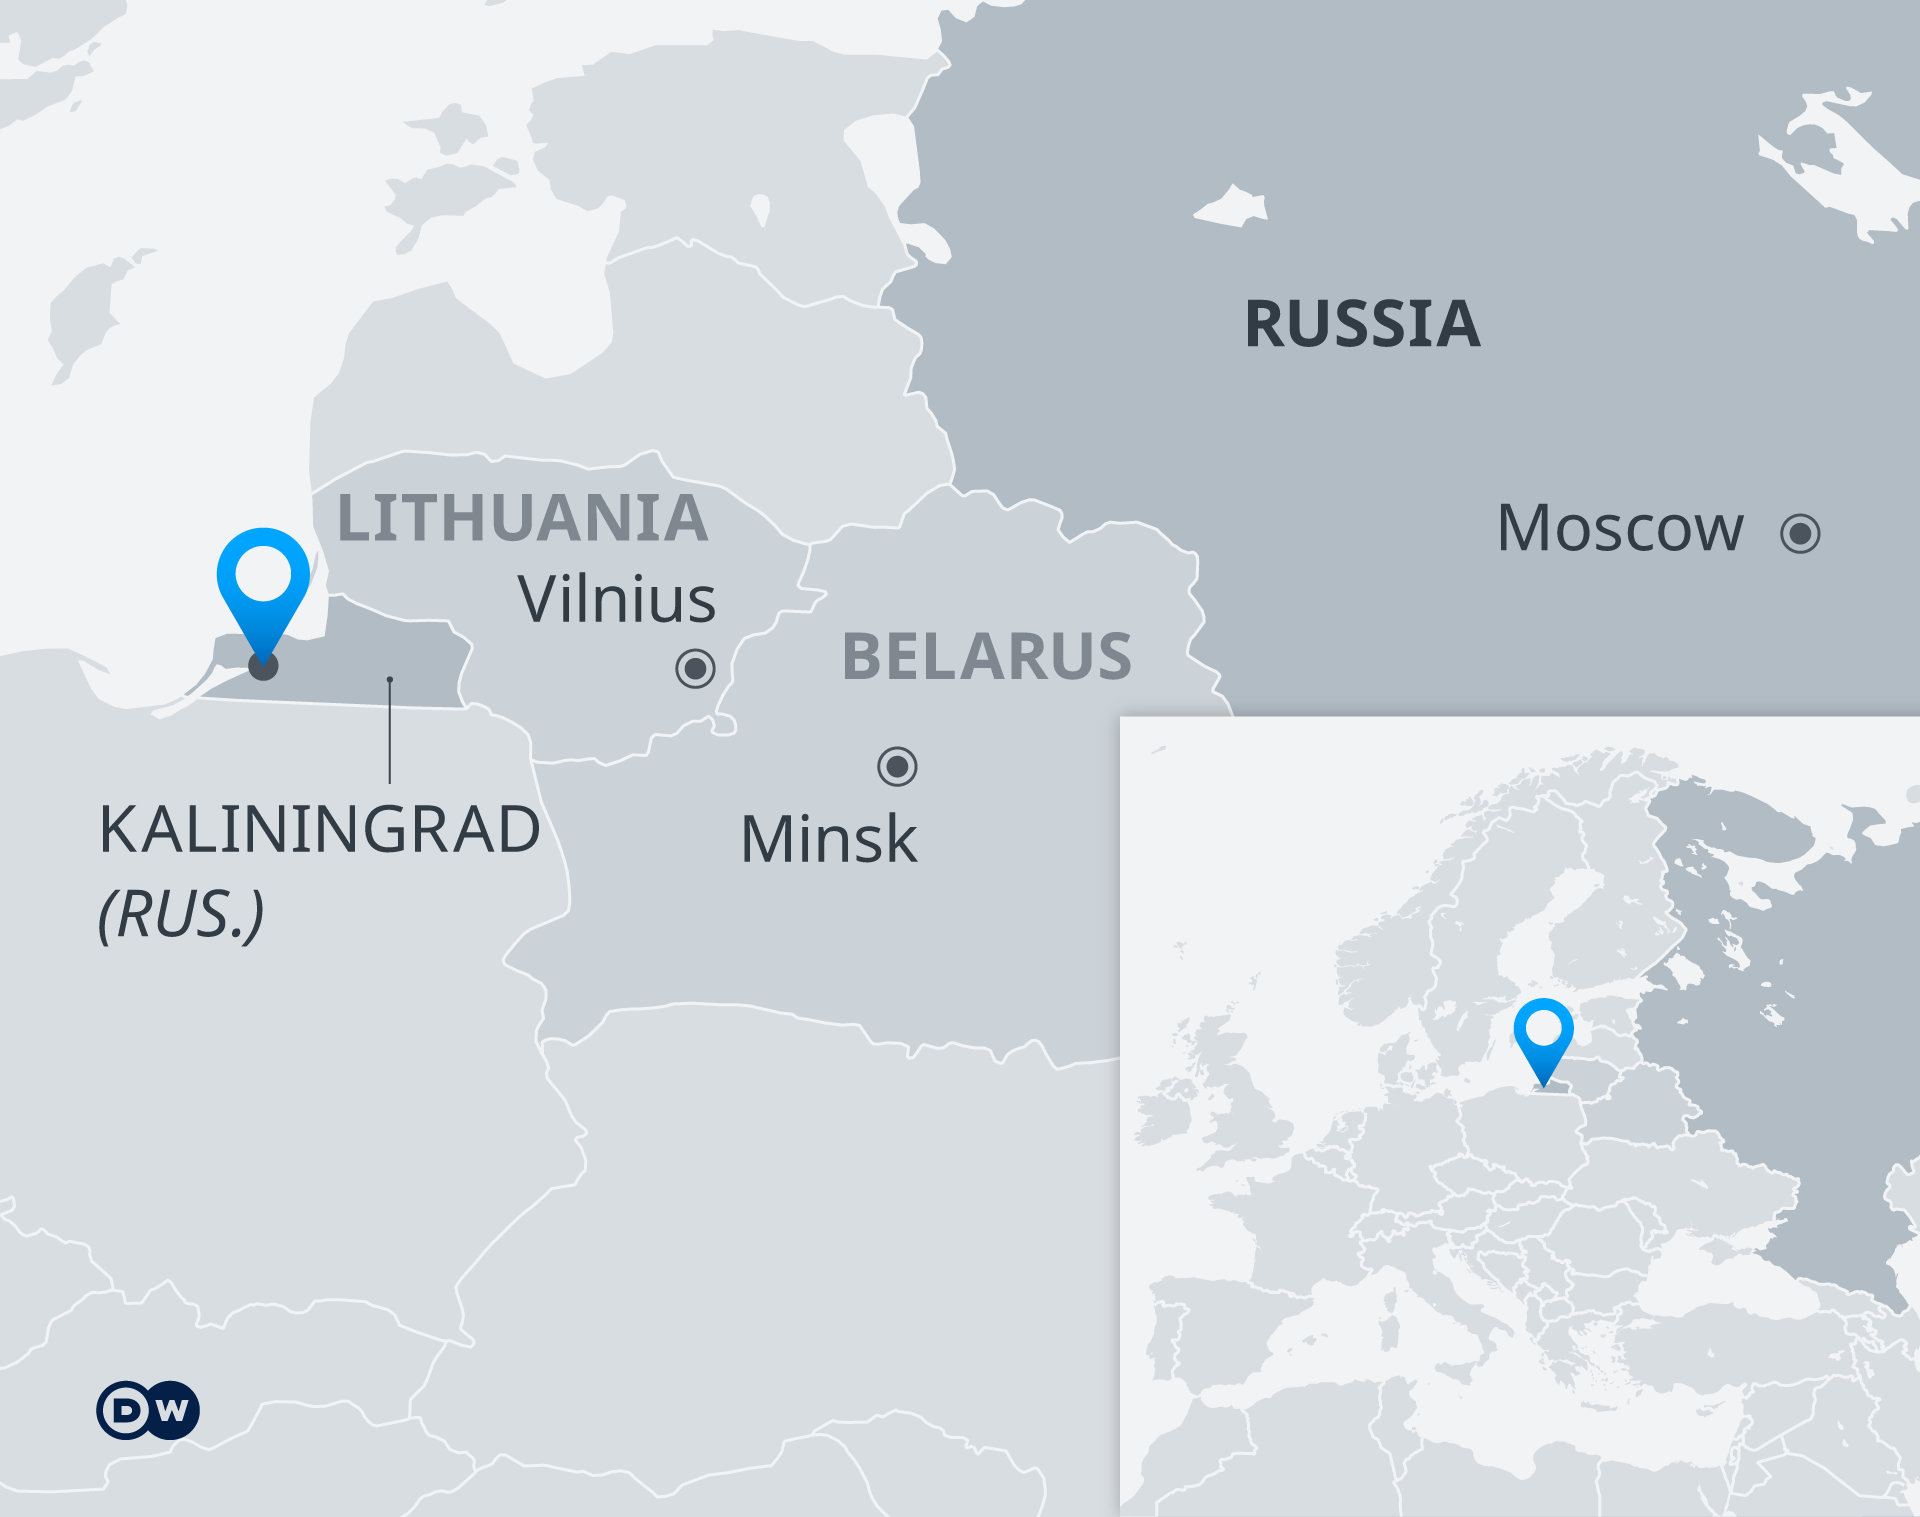 立陶宛阻止俄罗斯过境运输 欧俄紧张进一步升级